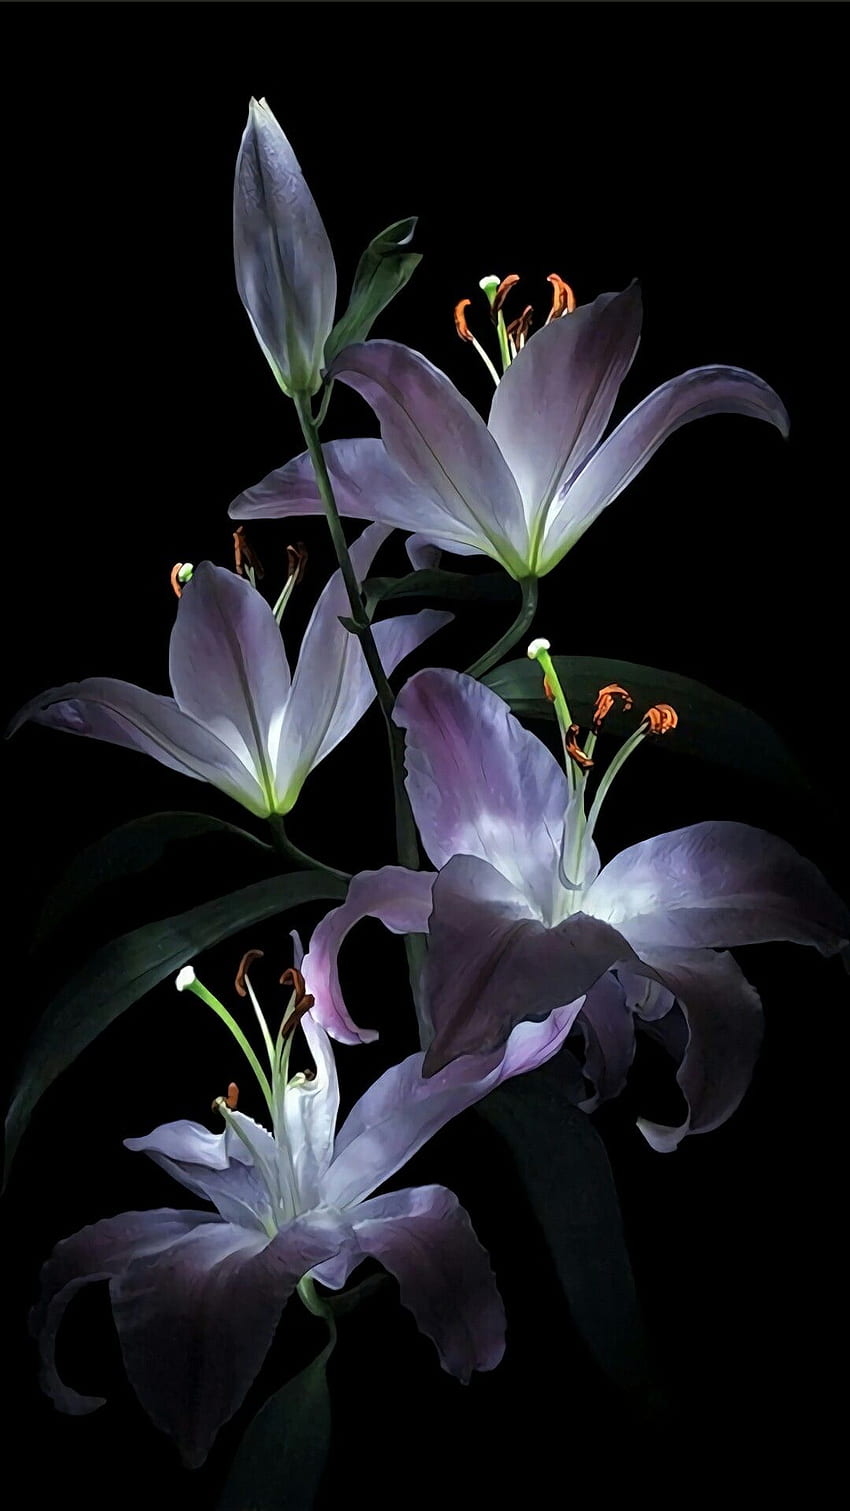 Bunga, Tanaman Berbunga, Lily, Tanaman, Kelopak, Ungu - Bunga Lily iPhone - & Latar Belakang , Lili wallpaper ponsel HD